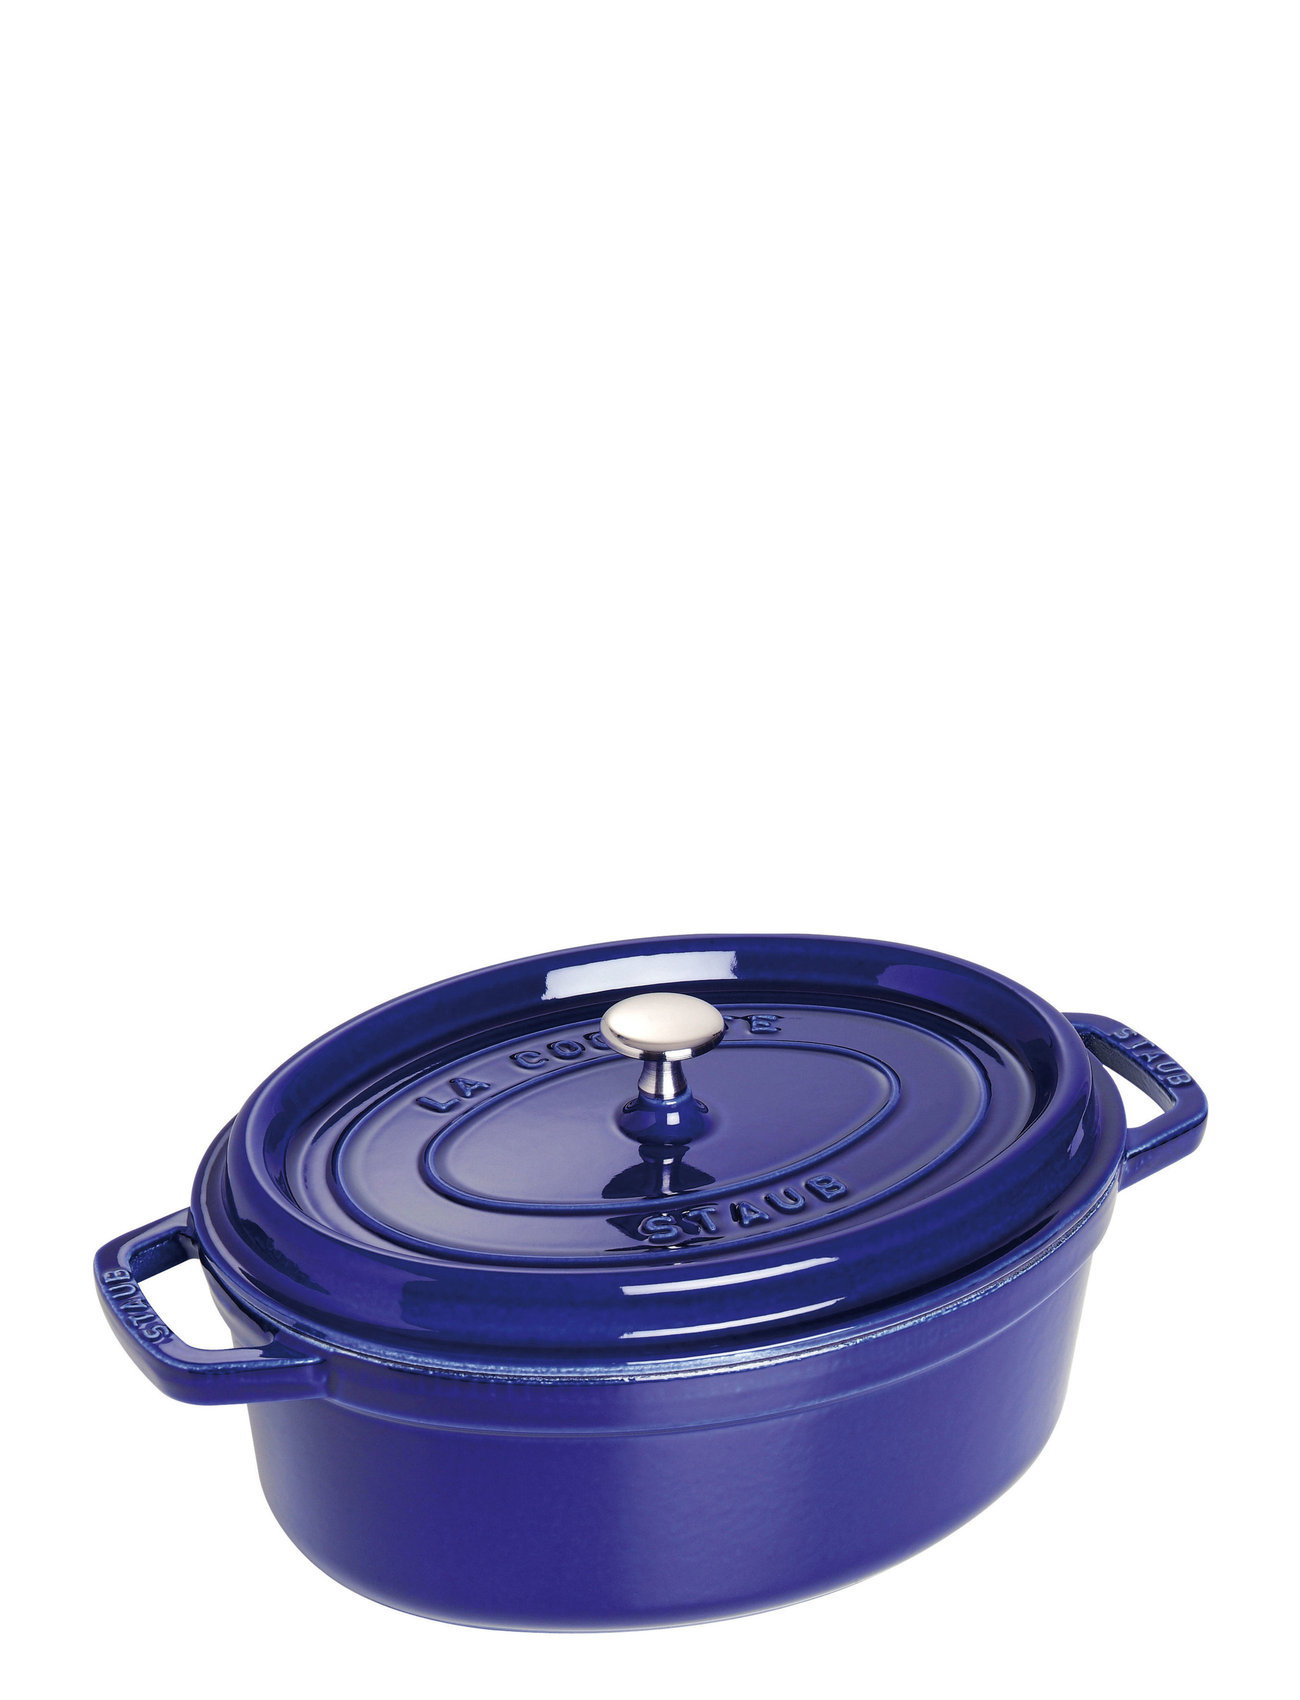 La Cocotte - Oval Cast Iron, 3 Layer Enamel Home Kitchen Pots & Pans Casserole Dishes Blue STAUB